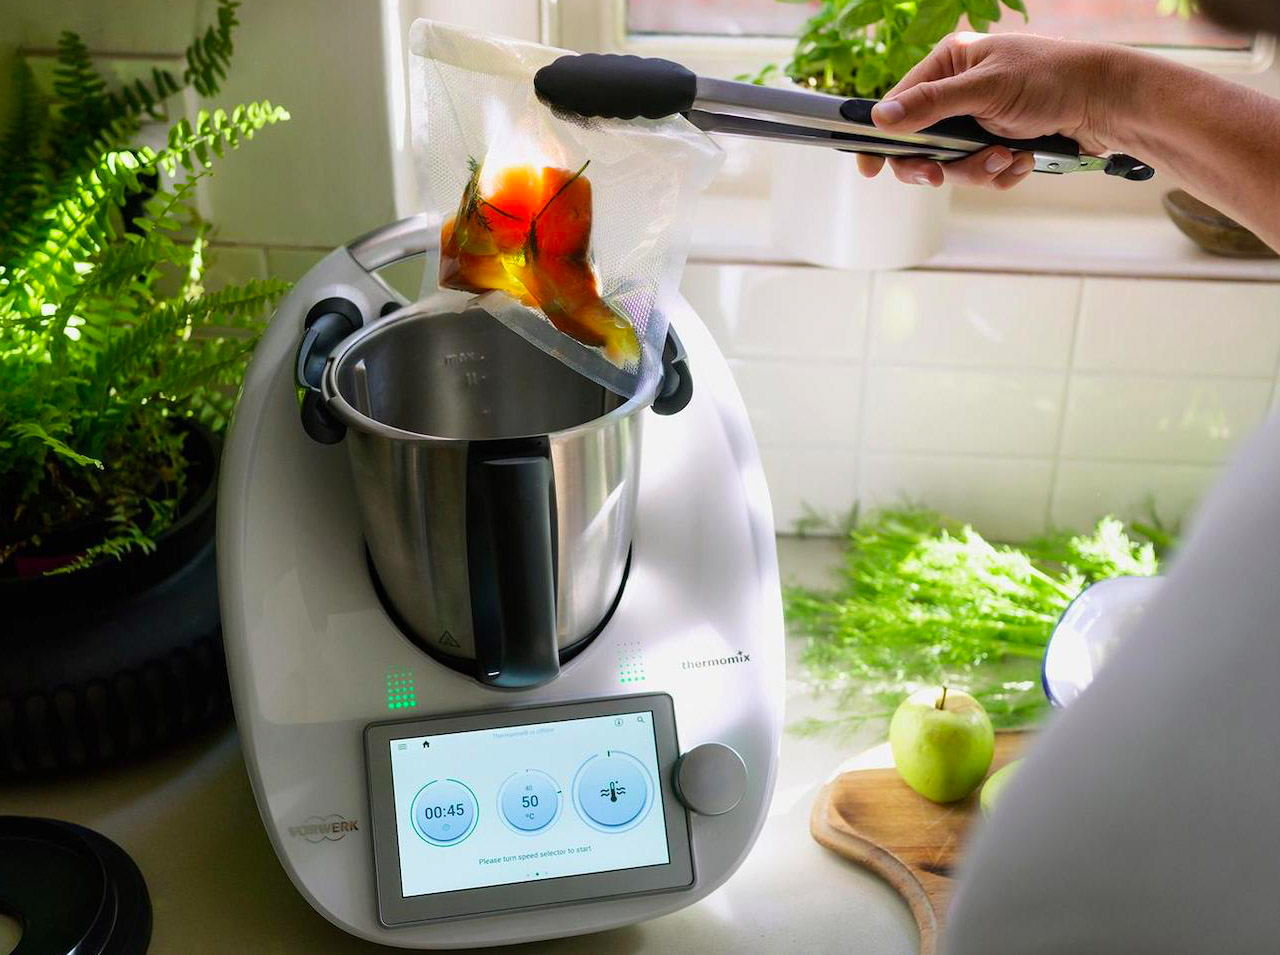 Accessoires cuisine pratique smart house gadgets kitchen